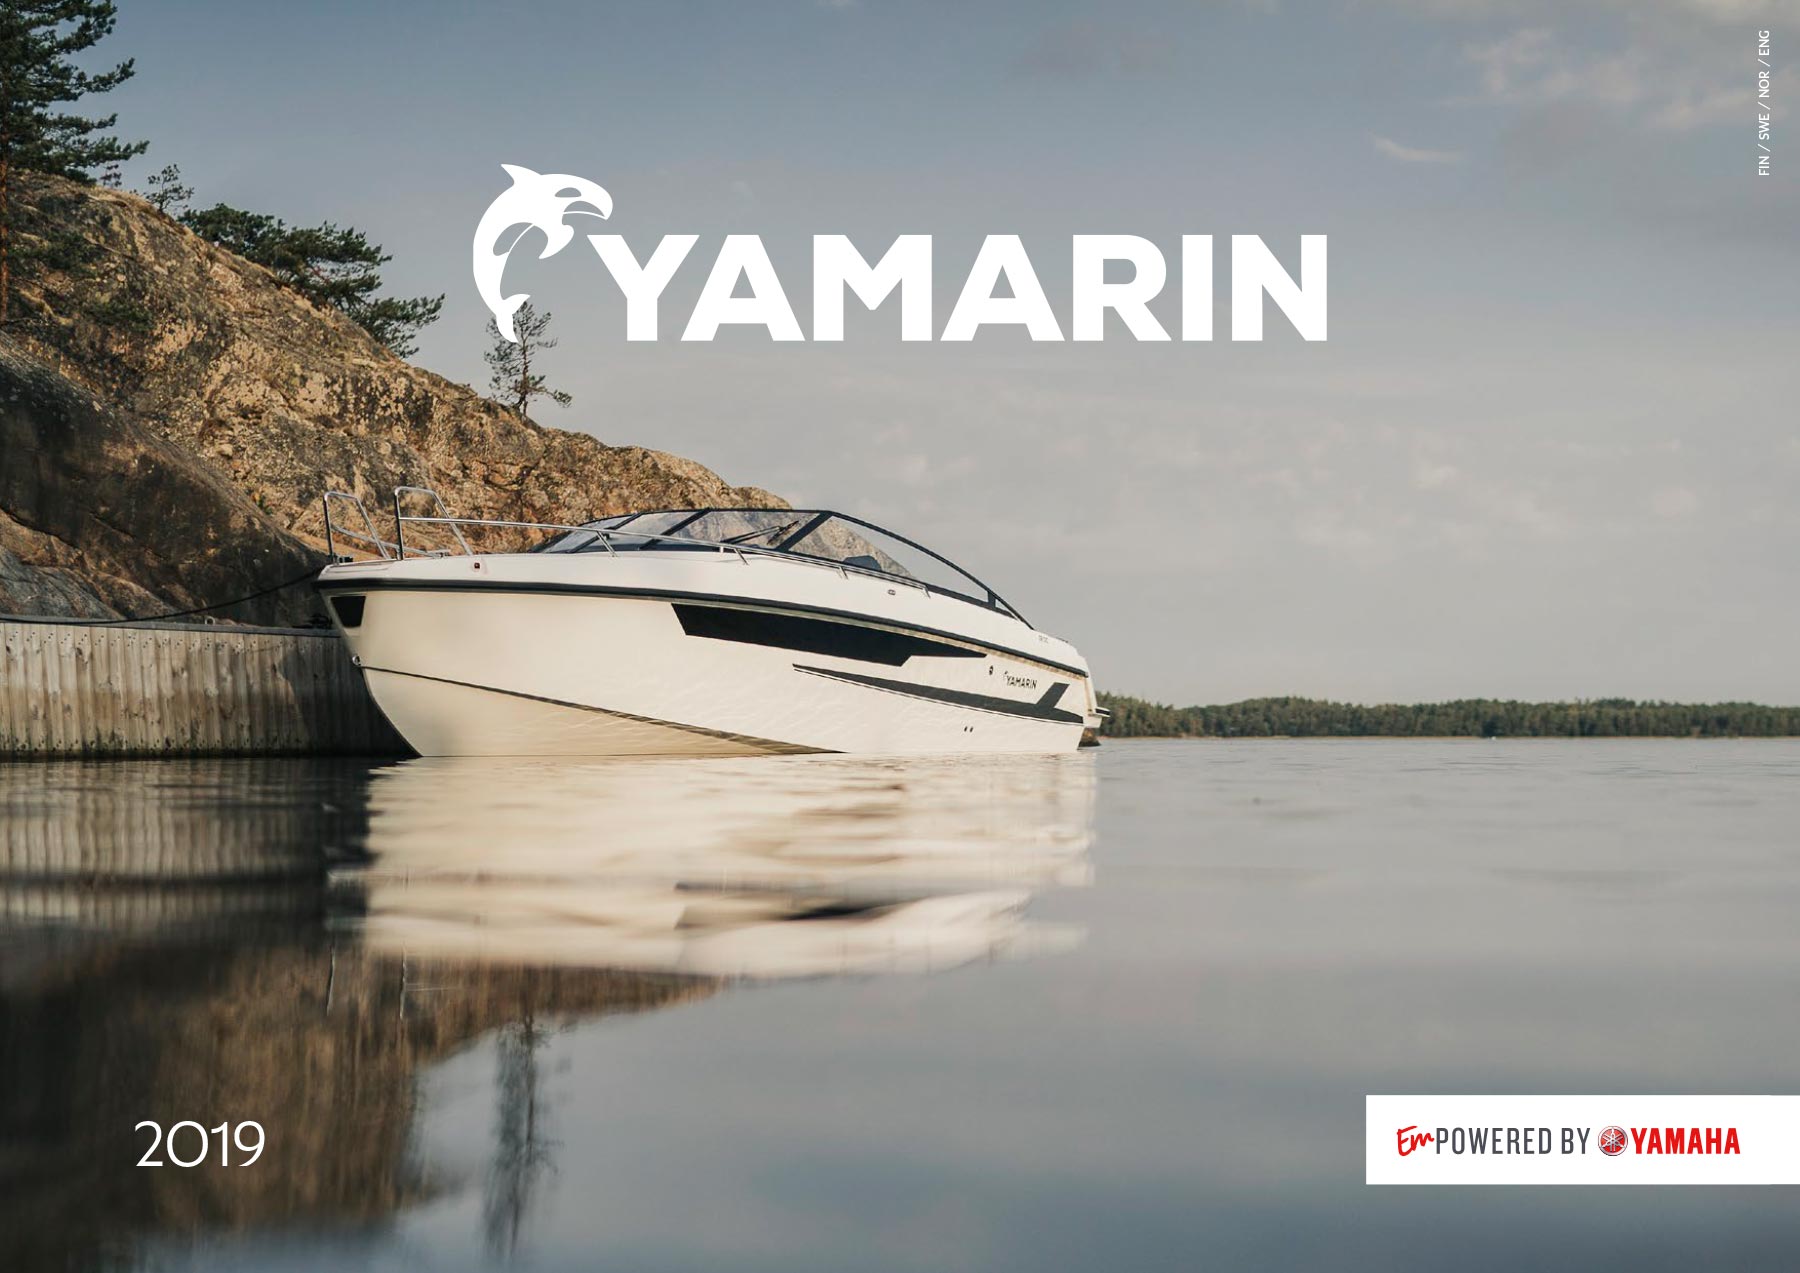 yamarin powerboats